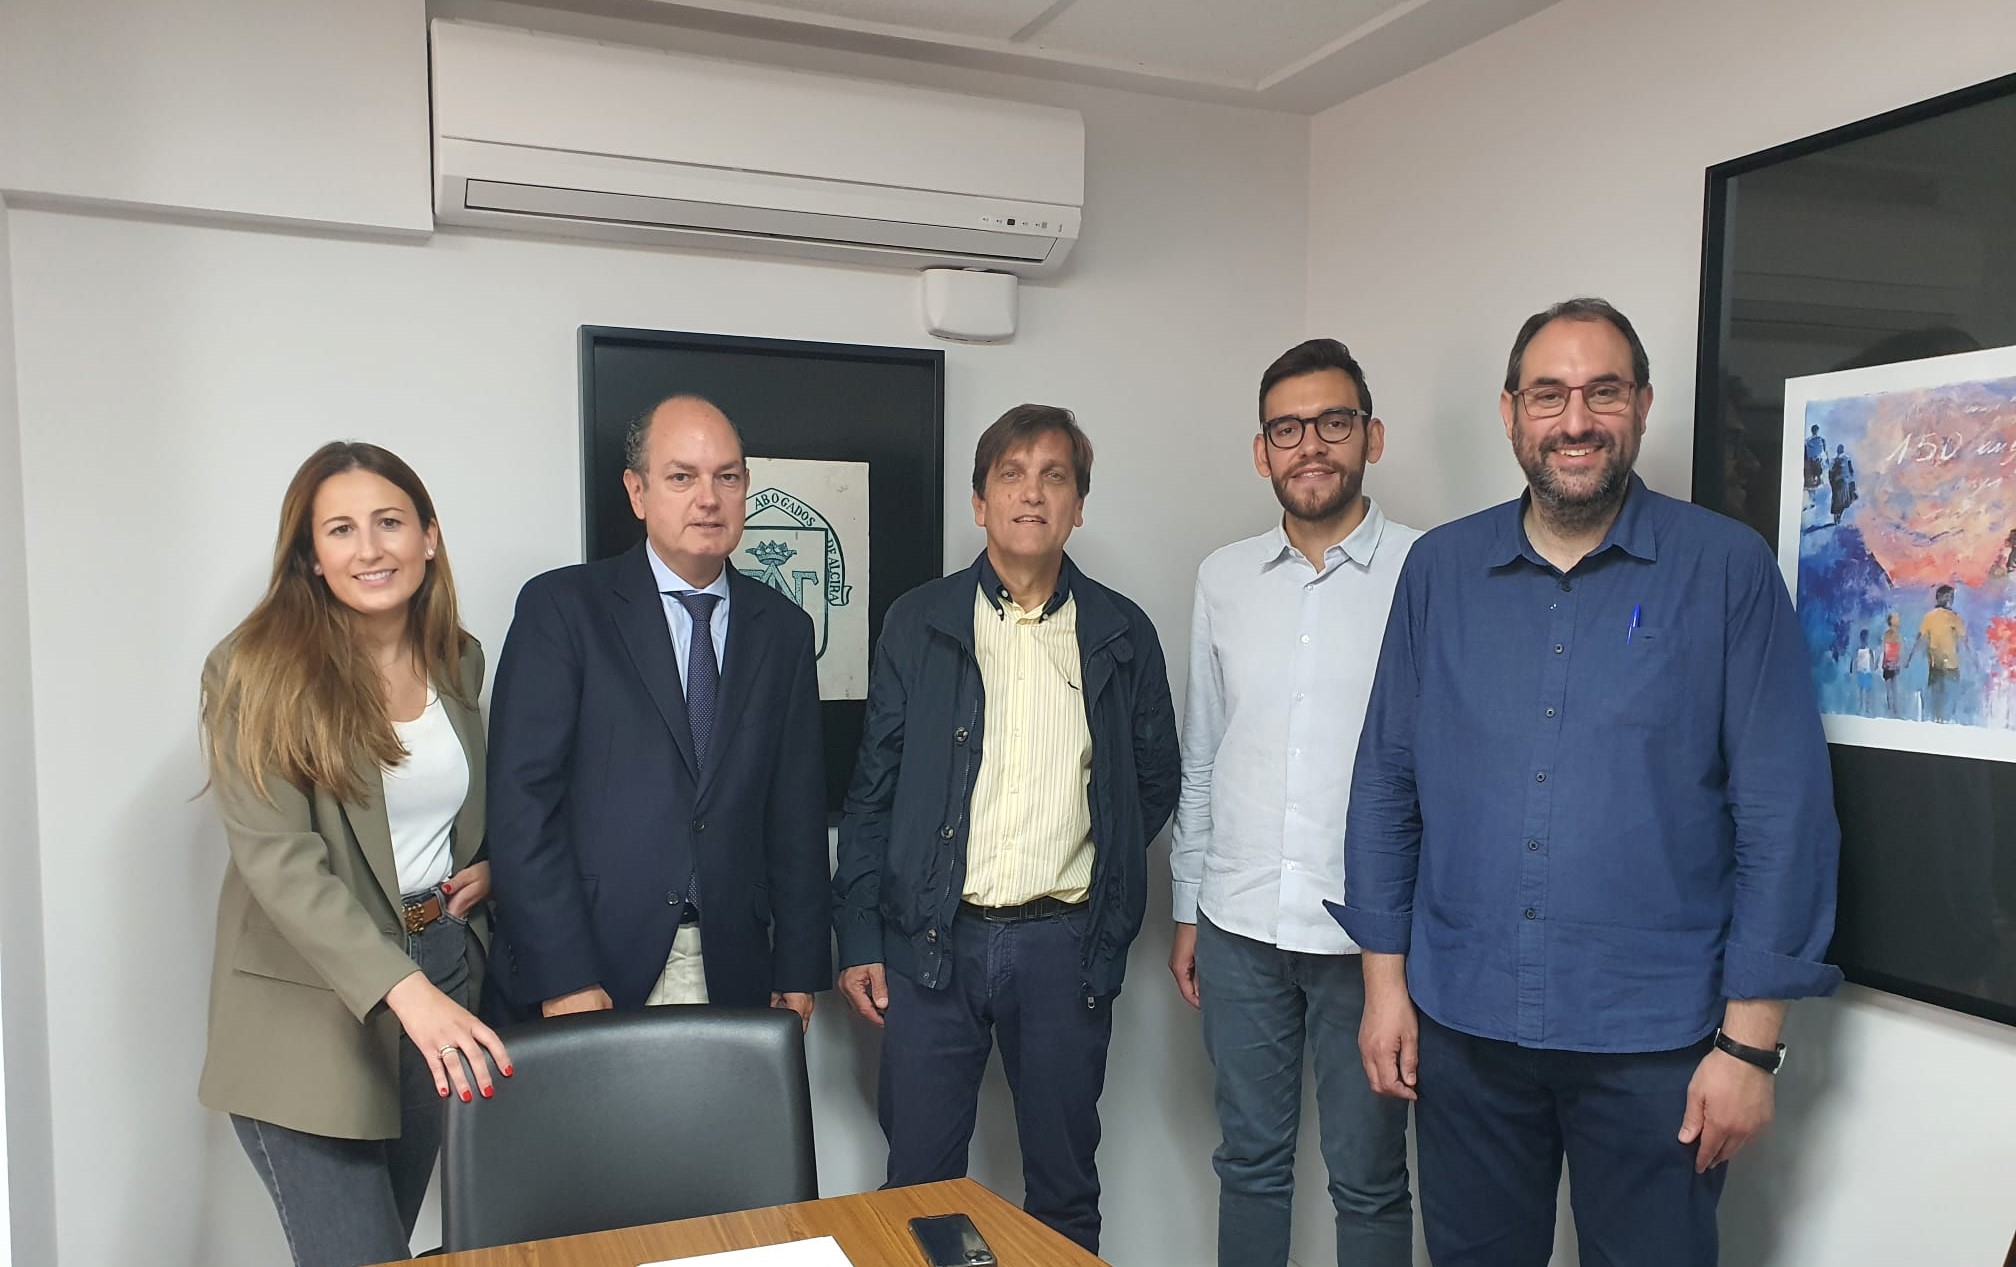 Representants del Col·legi d'Advocats d'Alzira i de Compromís Alzira